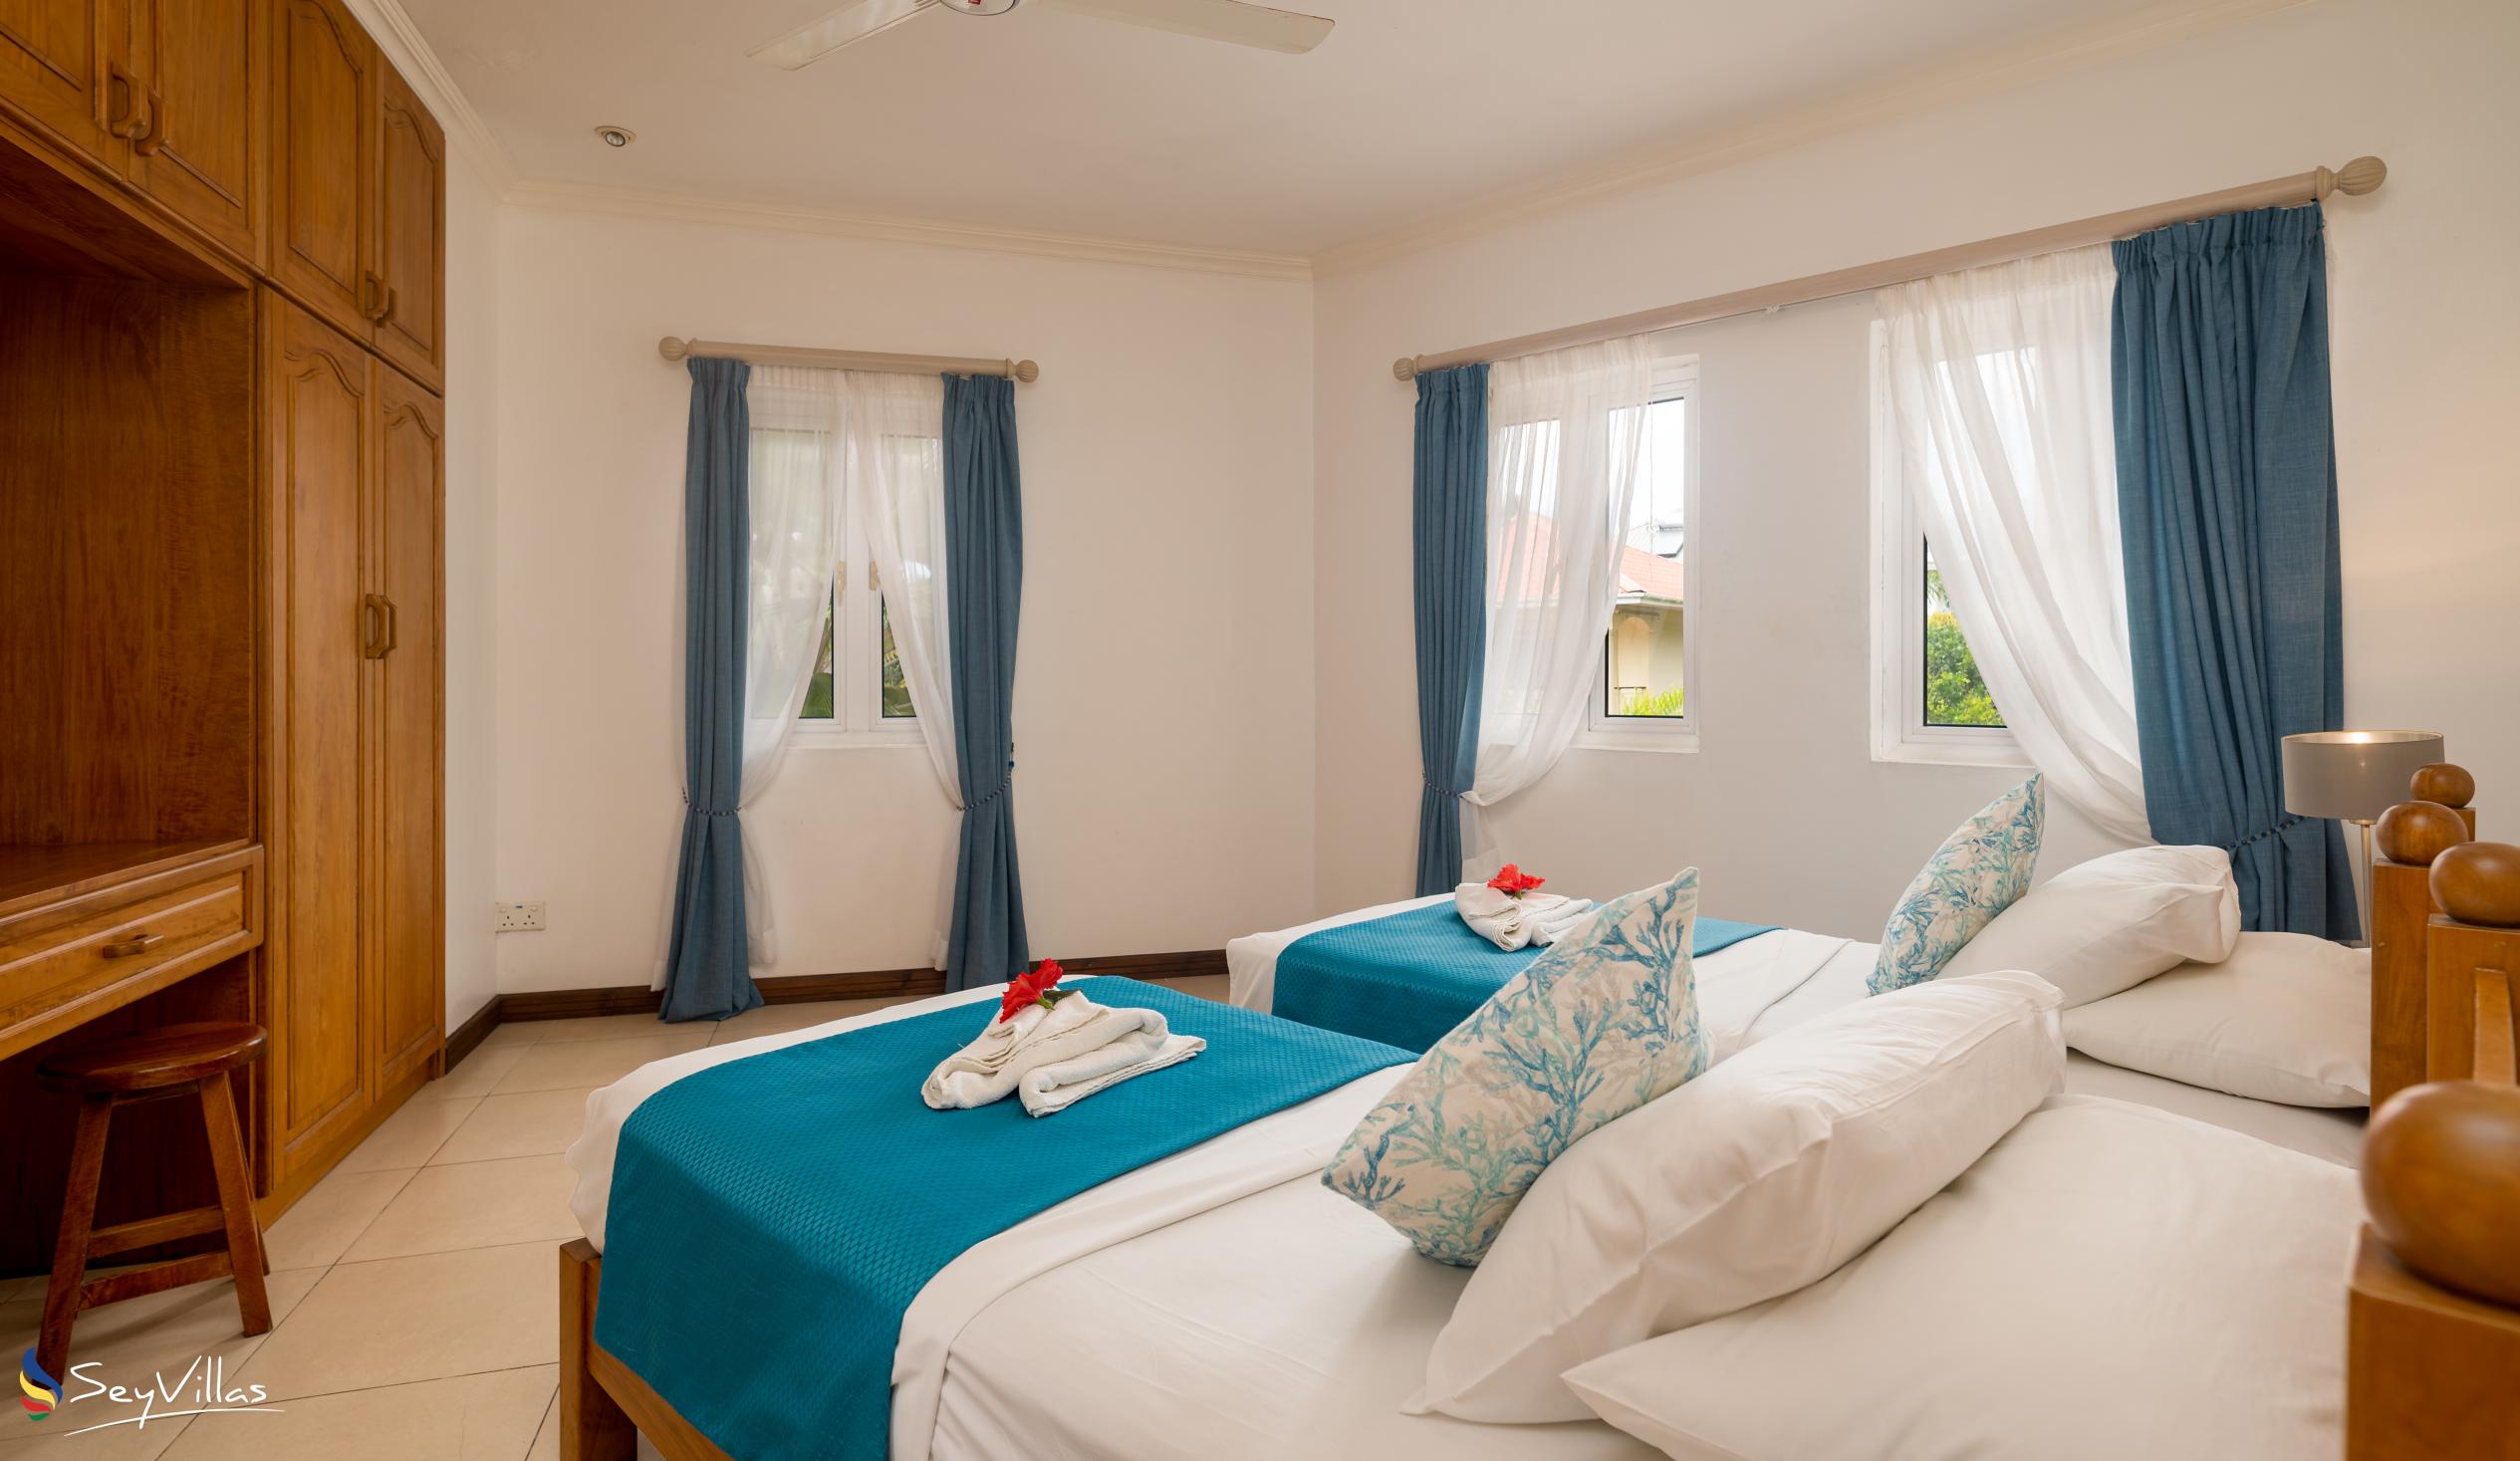 Photo 123: Marie-Laure Suites - 2-Bedroom Apartment - Mahé (Seychelles)